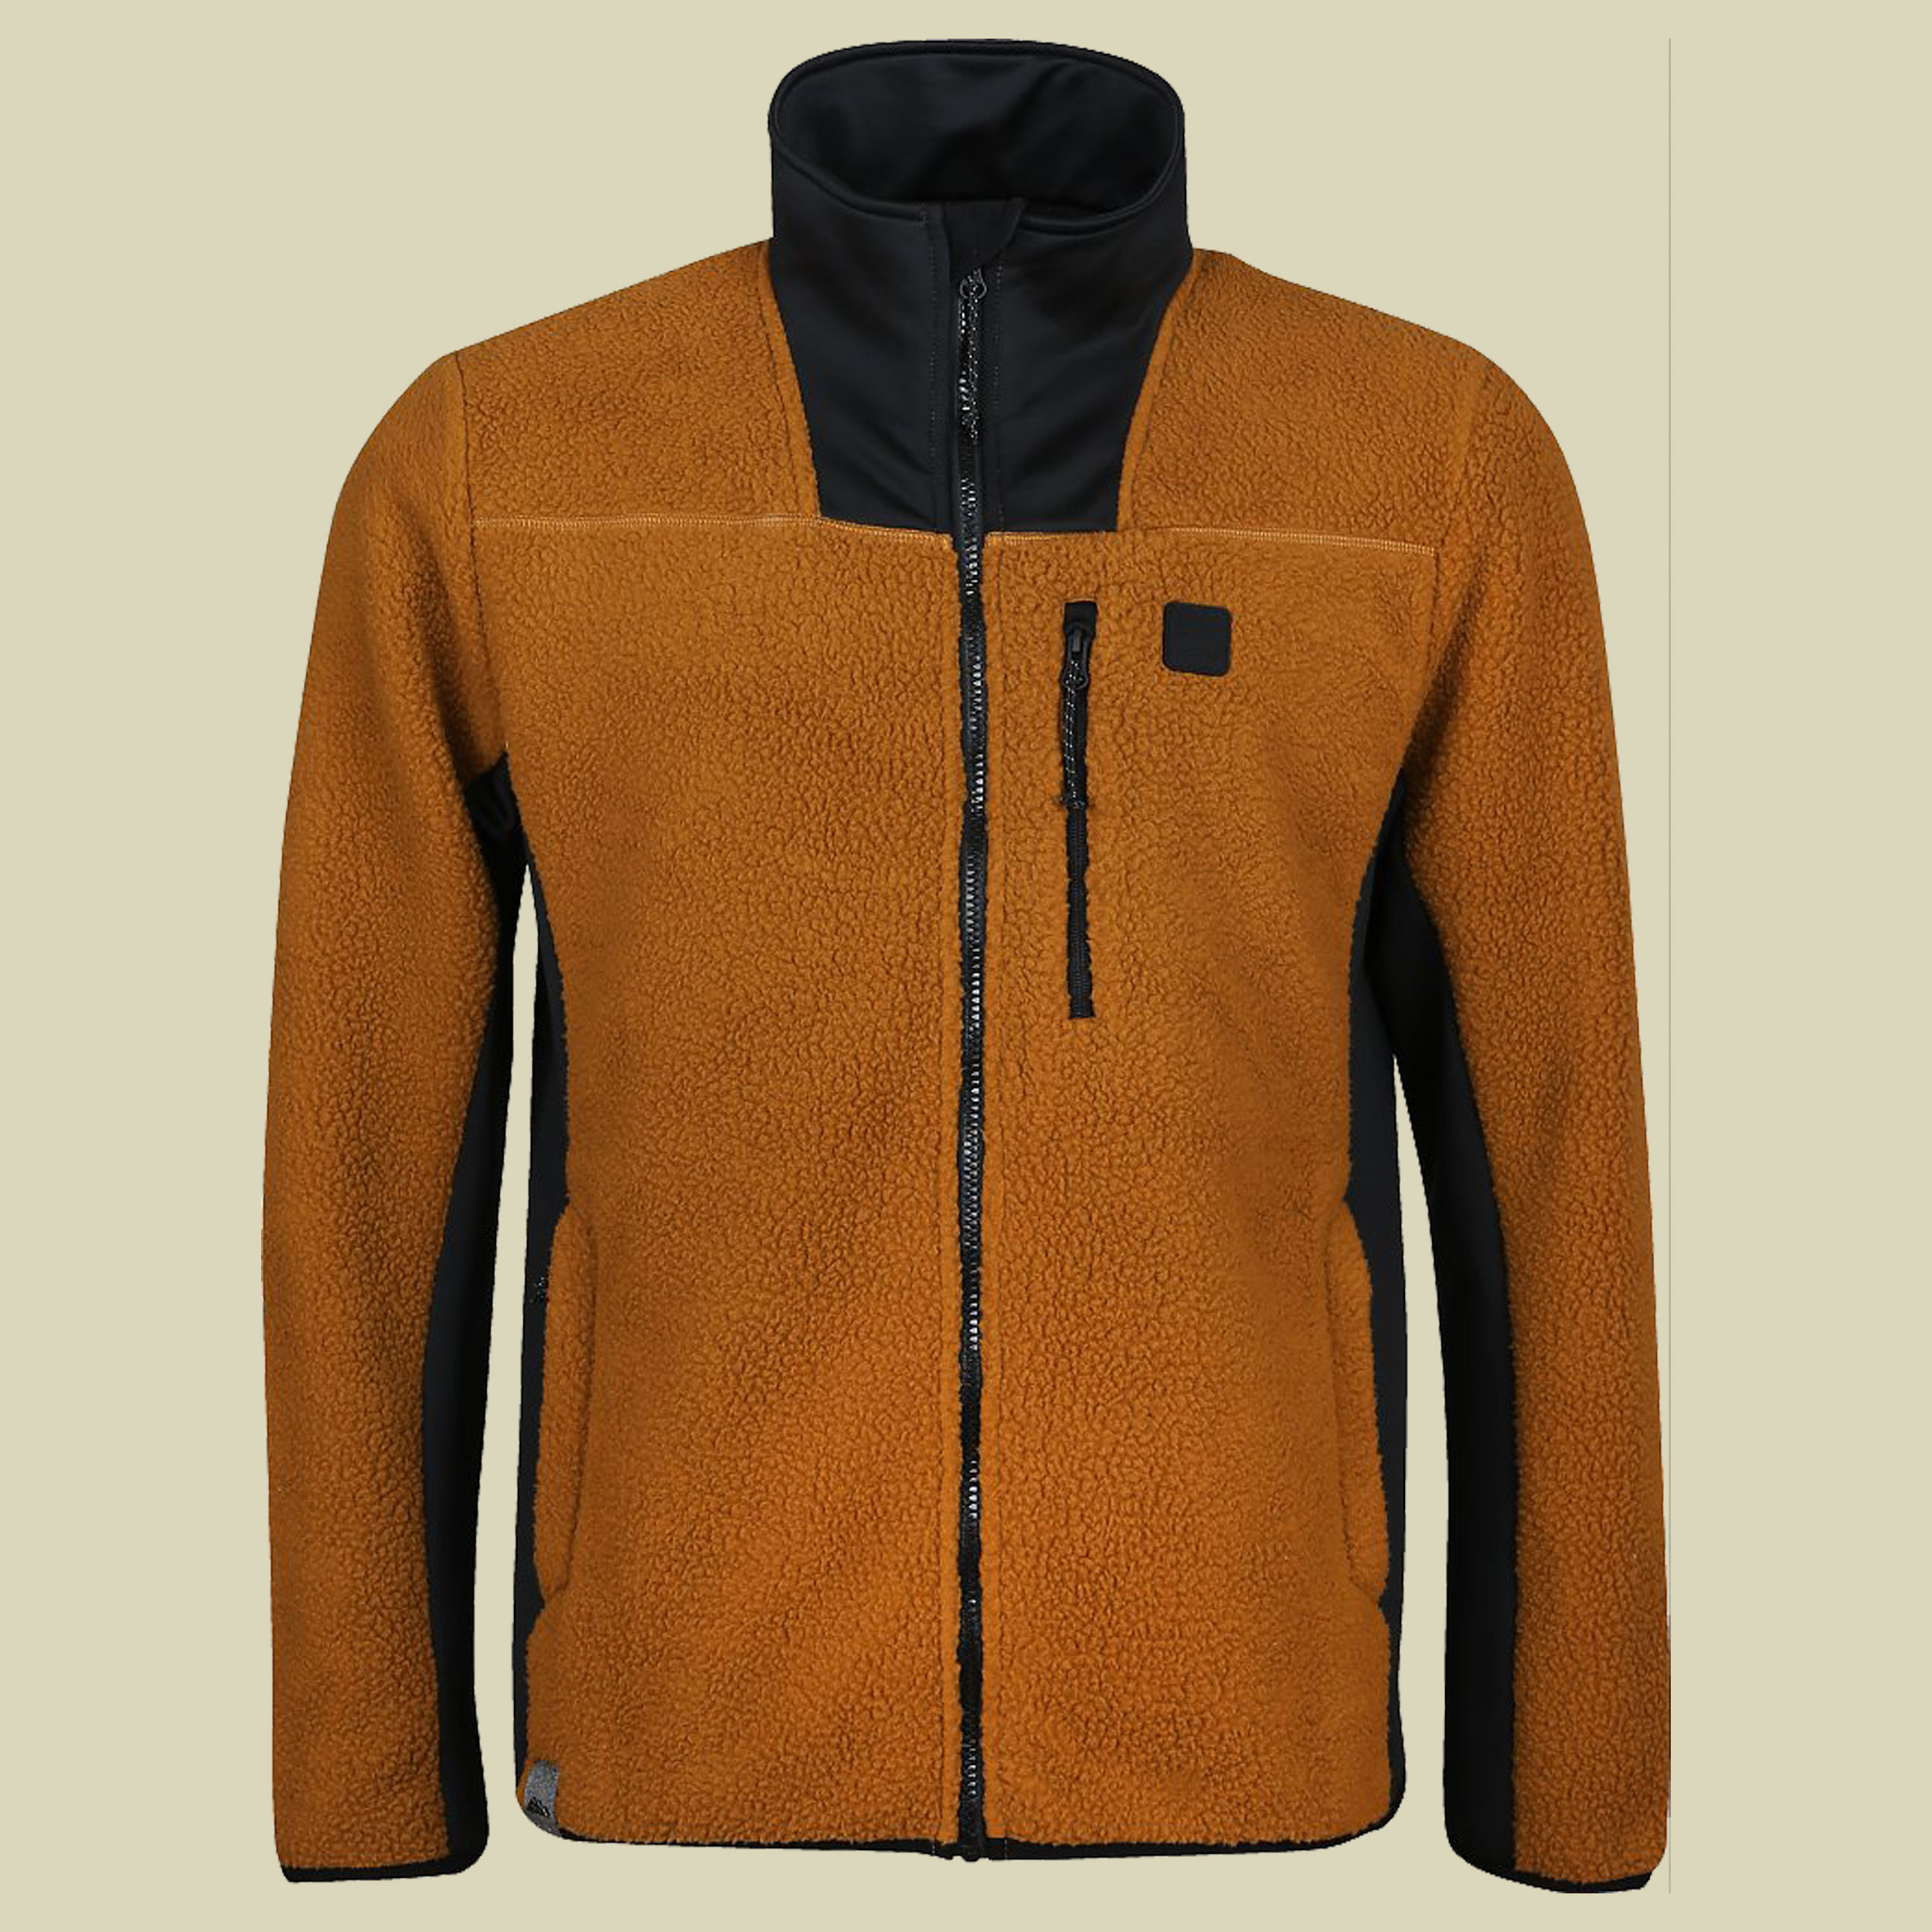 Verano-M Fleece Jacket Men Größe XXL Farbe sand